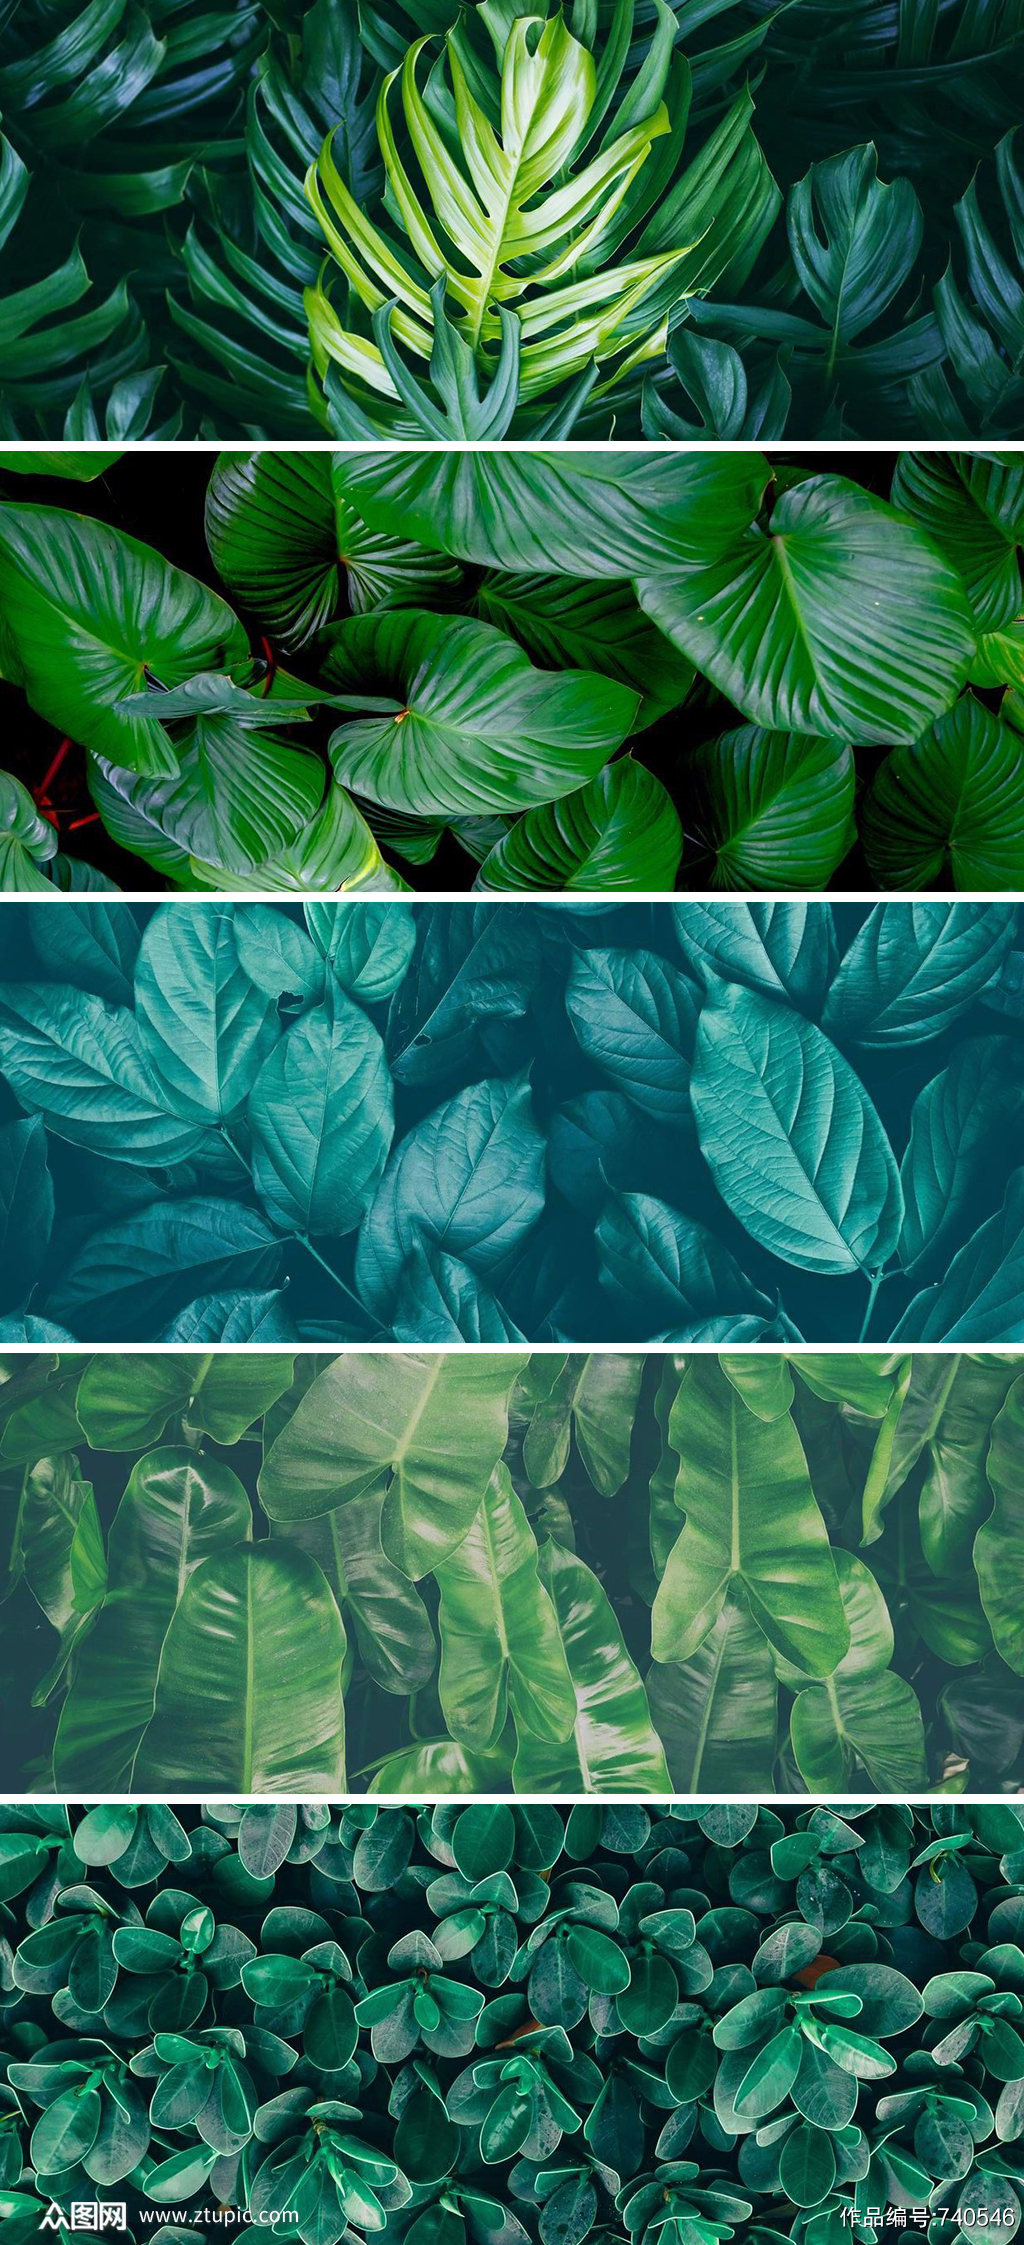 唯美森系绿色叶子植物高清背景图 设计元素素材下载 众图网